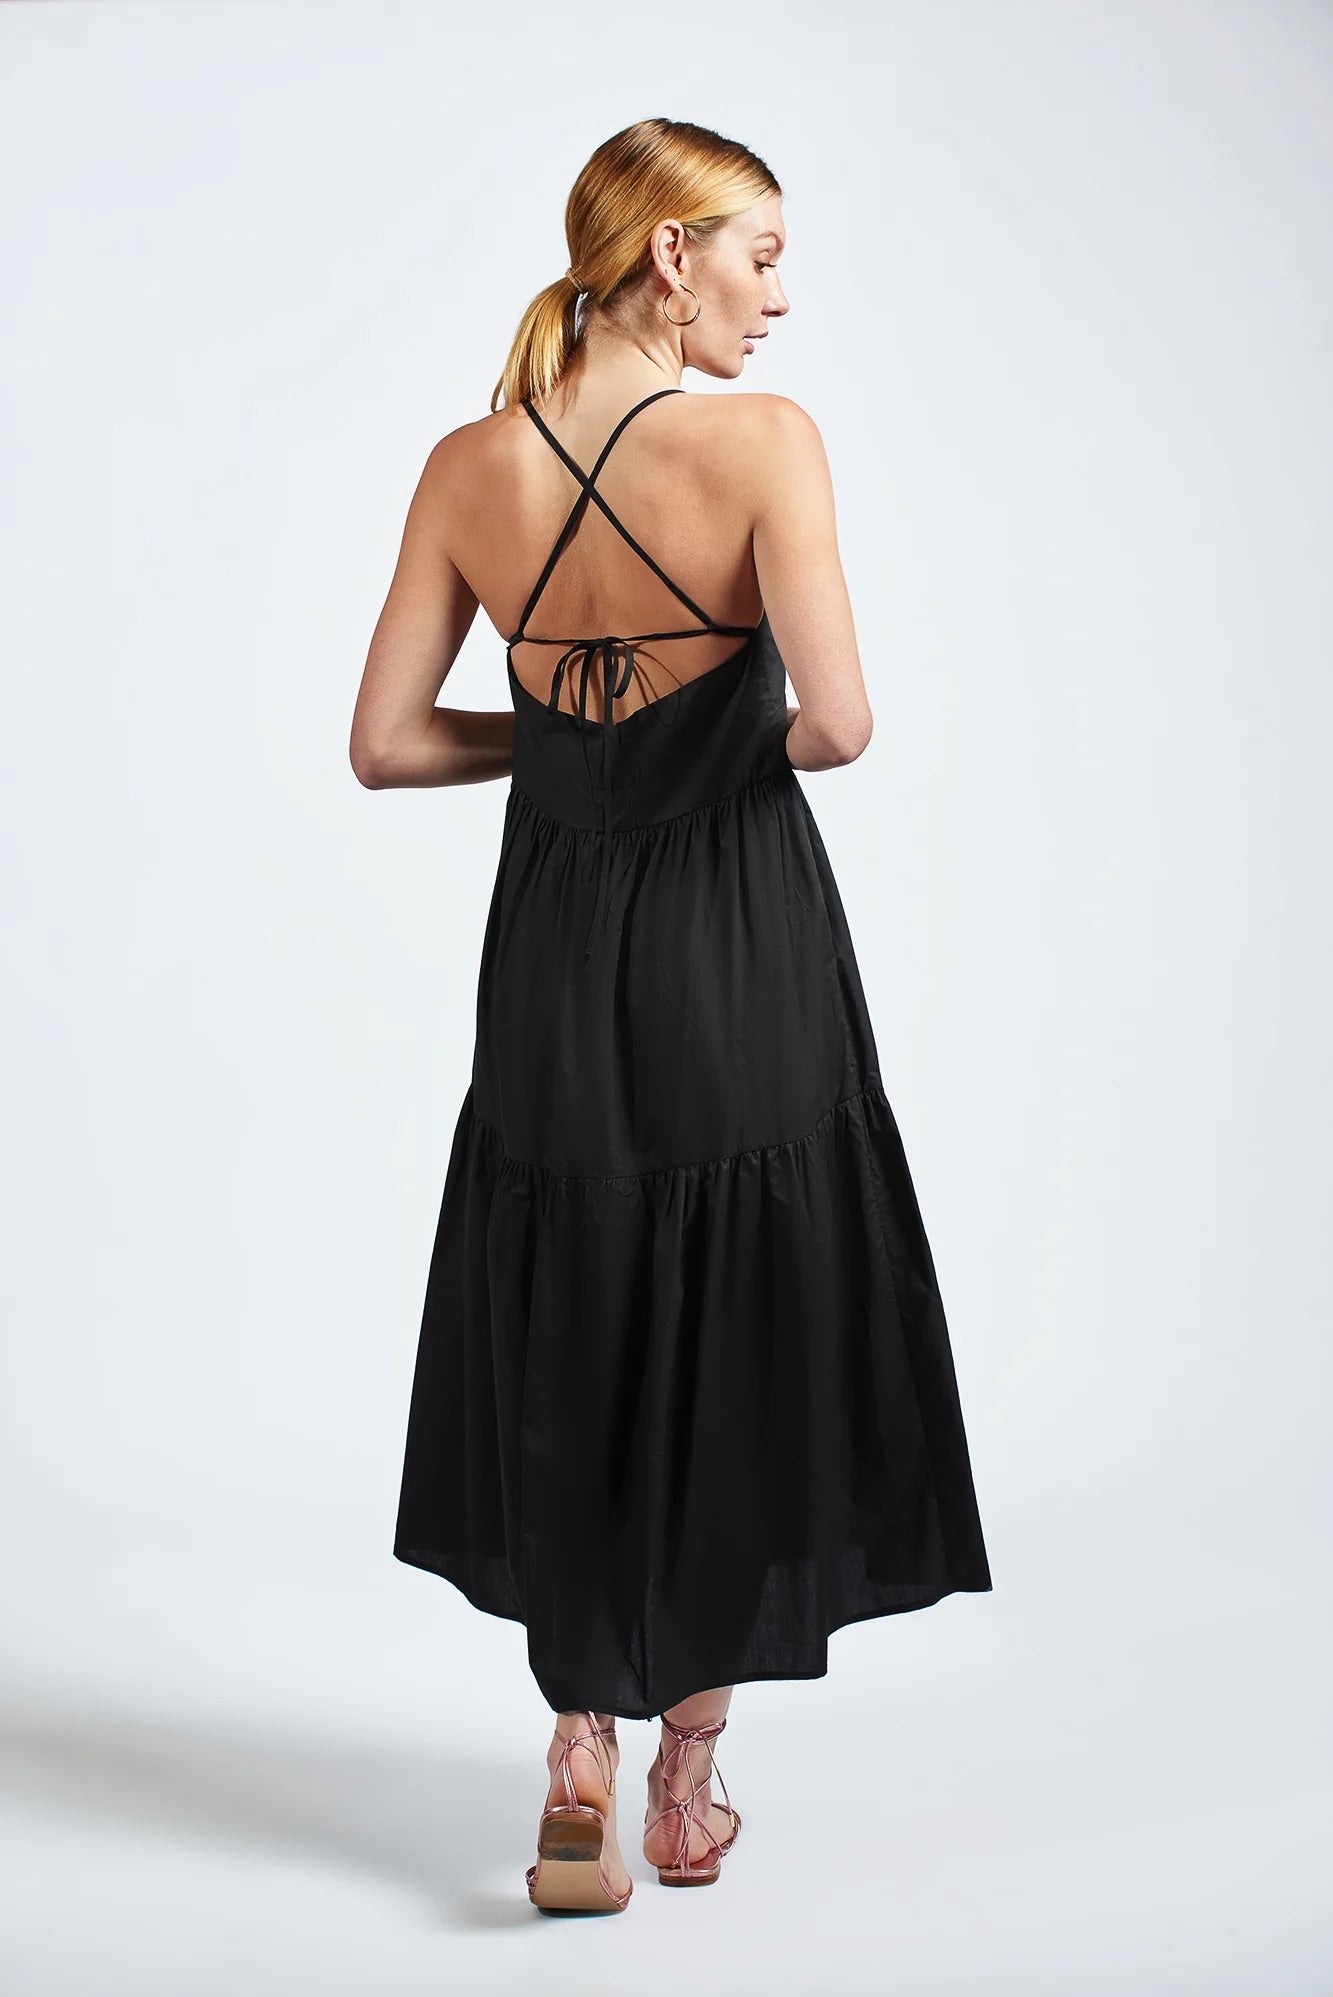 The Leora Dress in Black